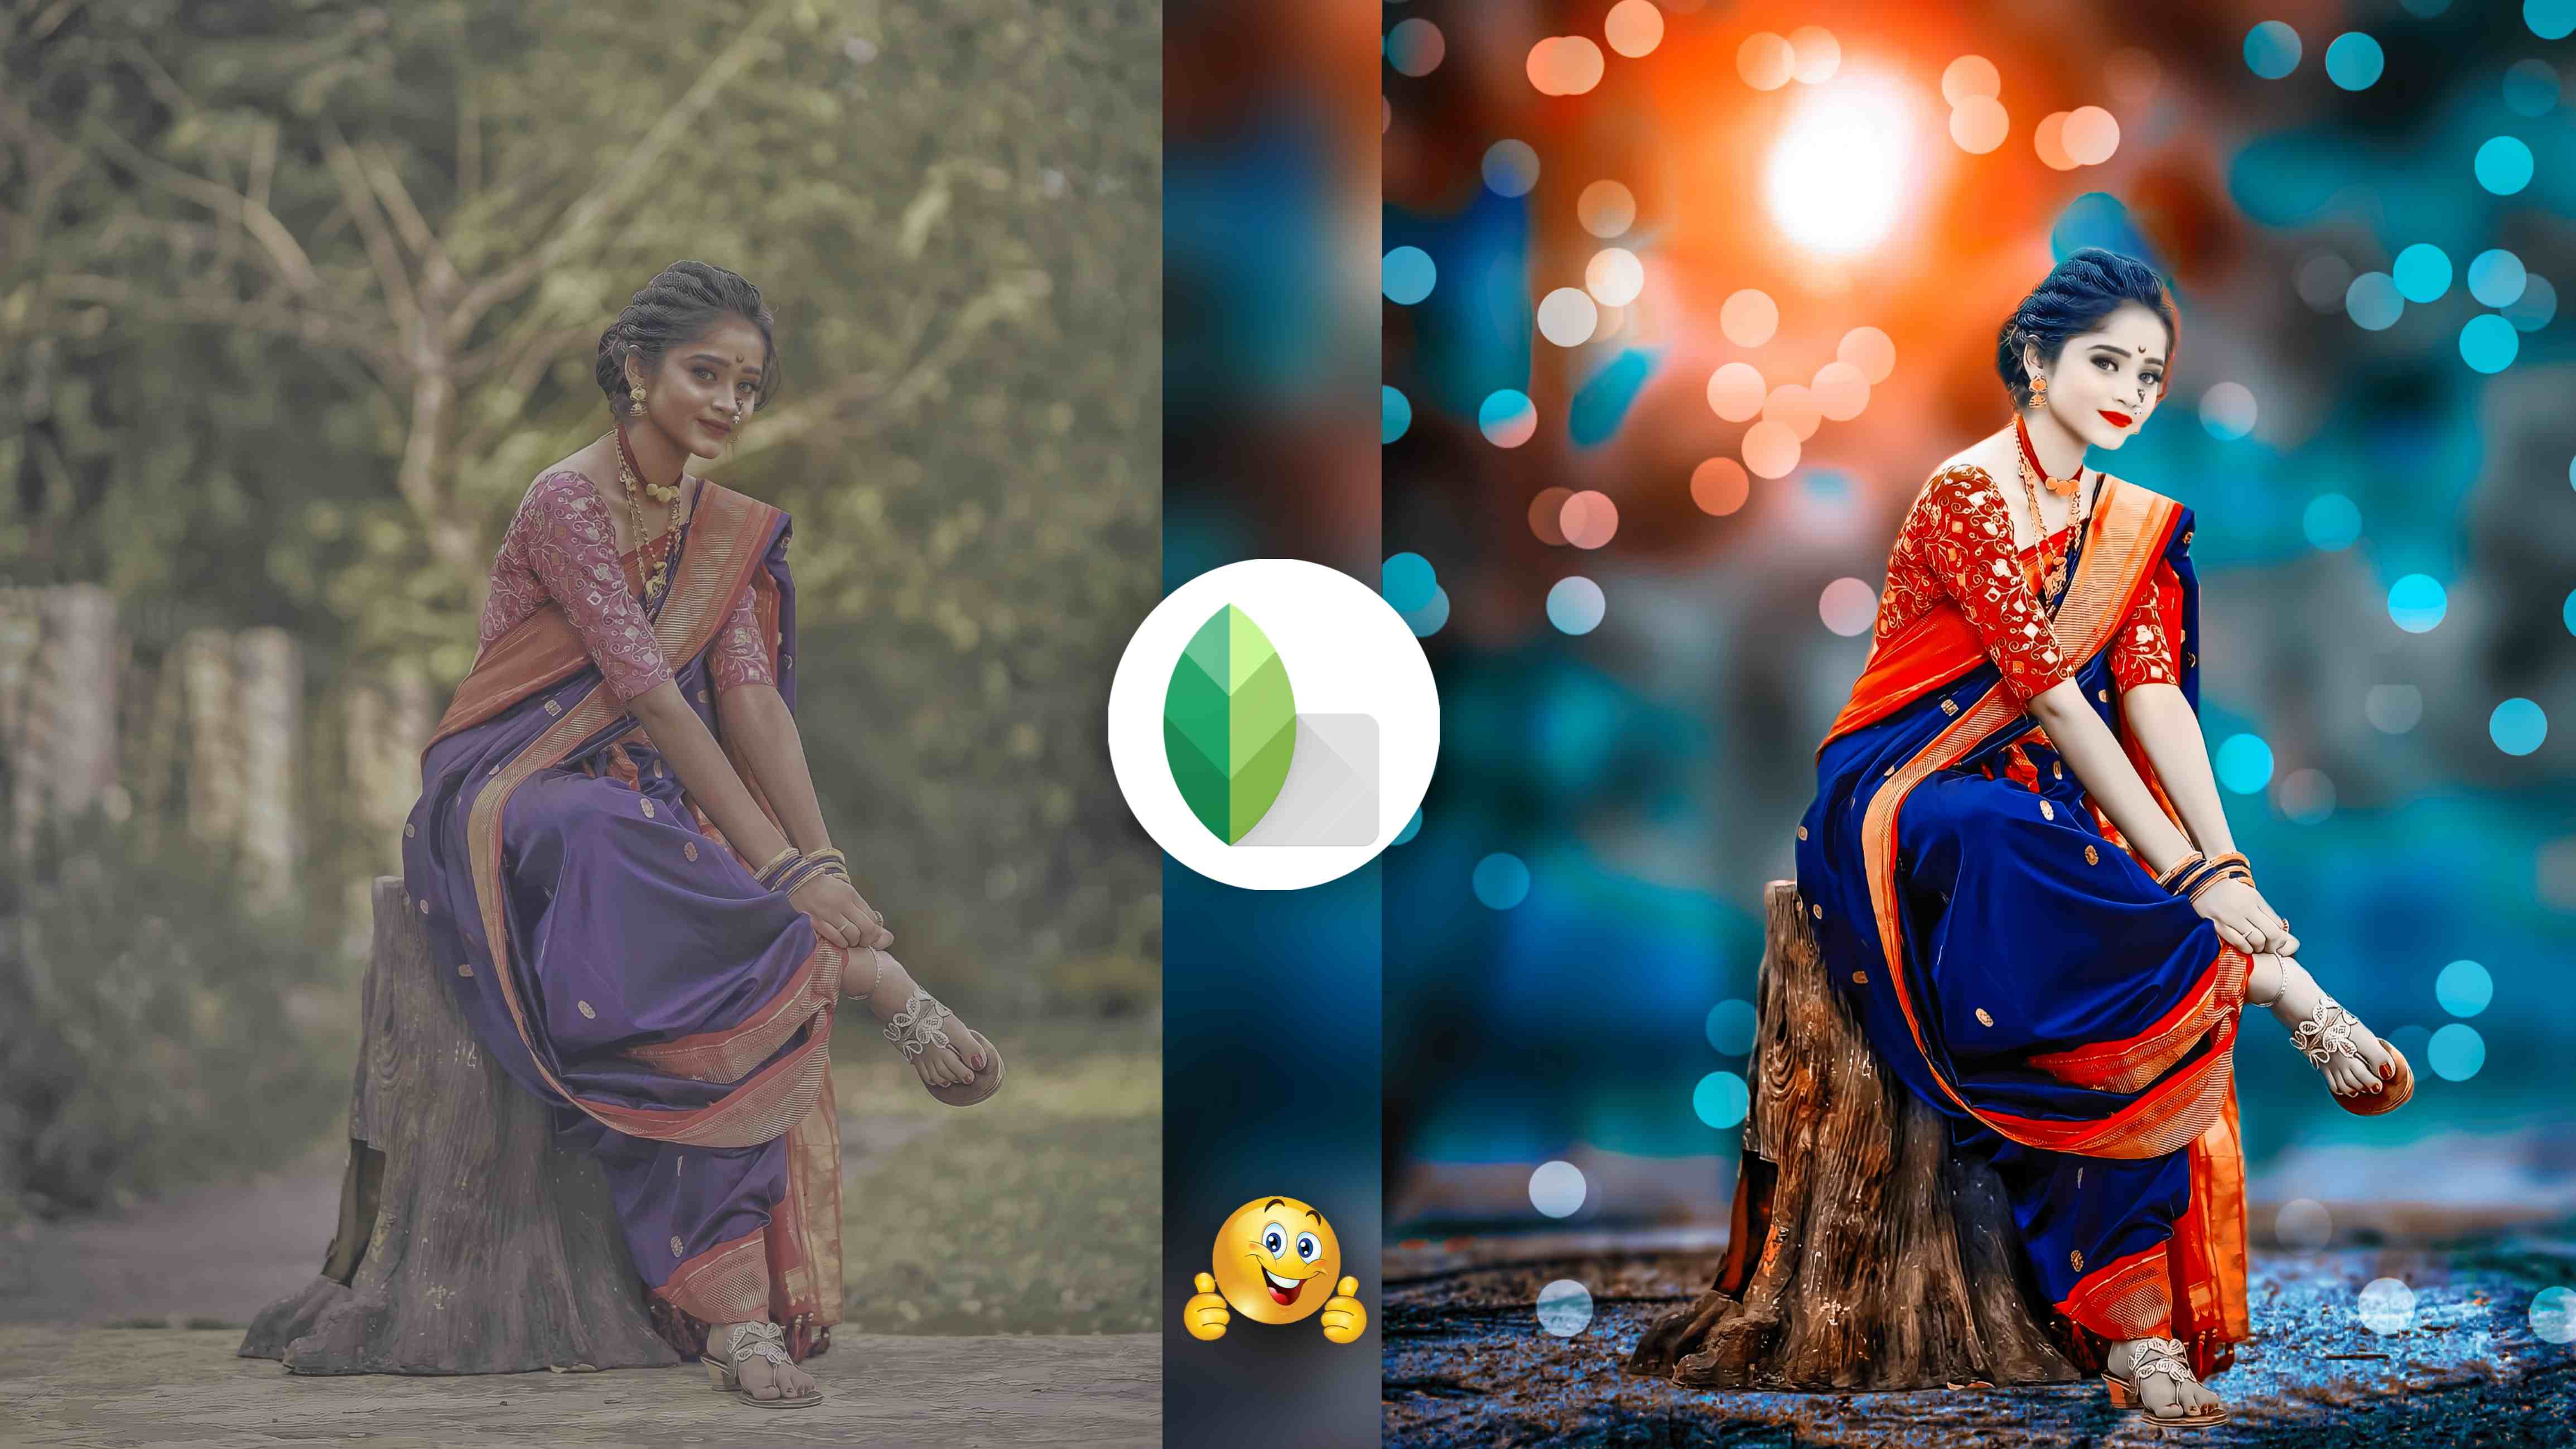 Snapseed là công cụ tuyệt vời giúp bạn thay đổi màu sắc nền thực tế một cách mới mẻ. Với các thủ thuật mới, bạn có thể tạo ra những bức ảnh chân thật và đẹp mắt hơn bao giờ hết. Hãy khám phá hình ảnh để tìm hiểu thêm về những bí quyết đổi màu nền thực tế bằng Snapseed nhé! Translation: Snapseed is an amazing tool that helps you change the color of real backgrounds in a new and creative way. With new tricks, you can create even more realistic and stunning images. Explore the image to discover more about the secrets of changing background colors with Snapseed!